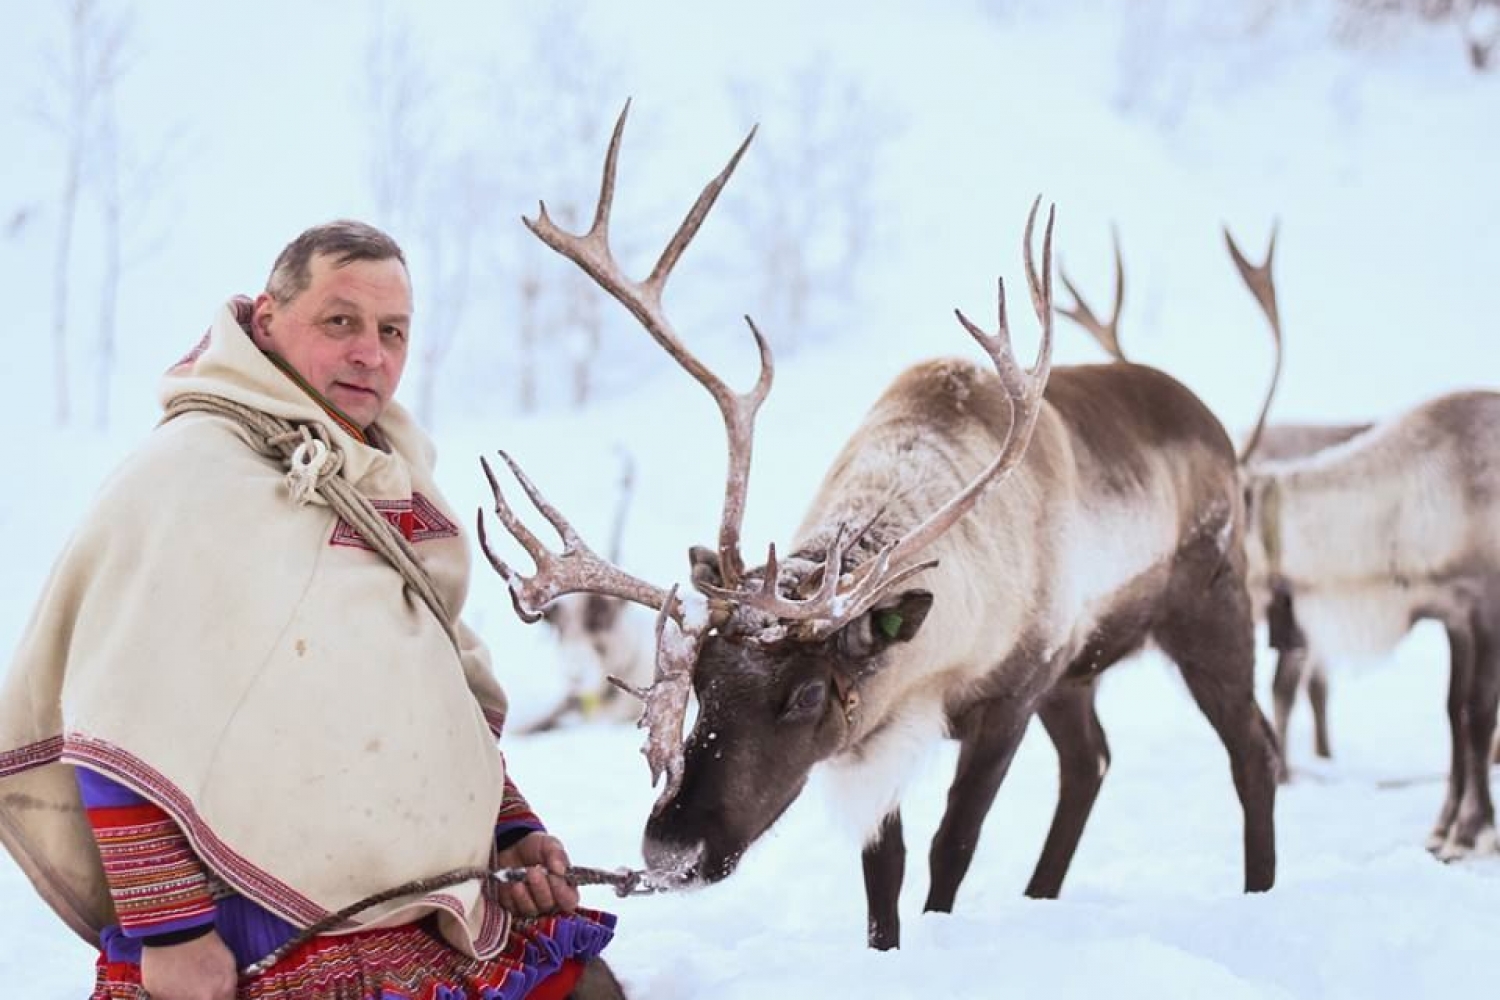 A Sami and reindeer